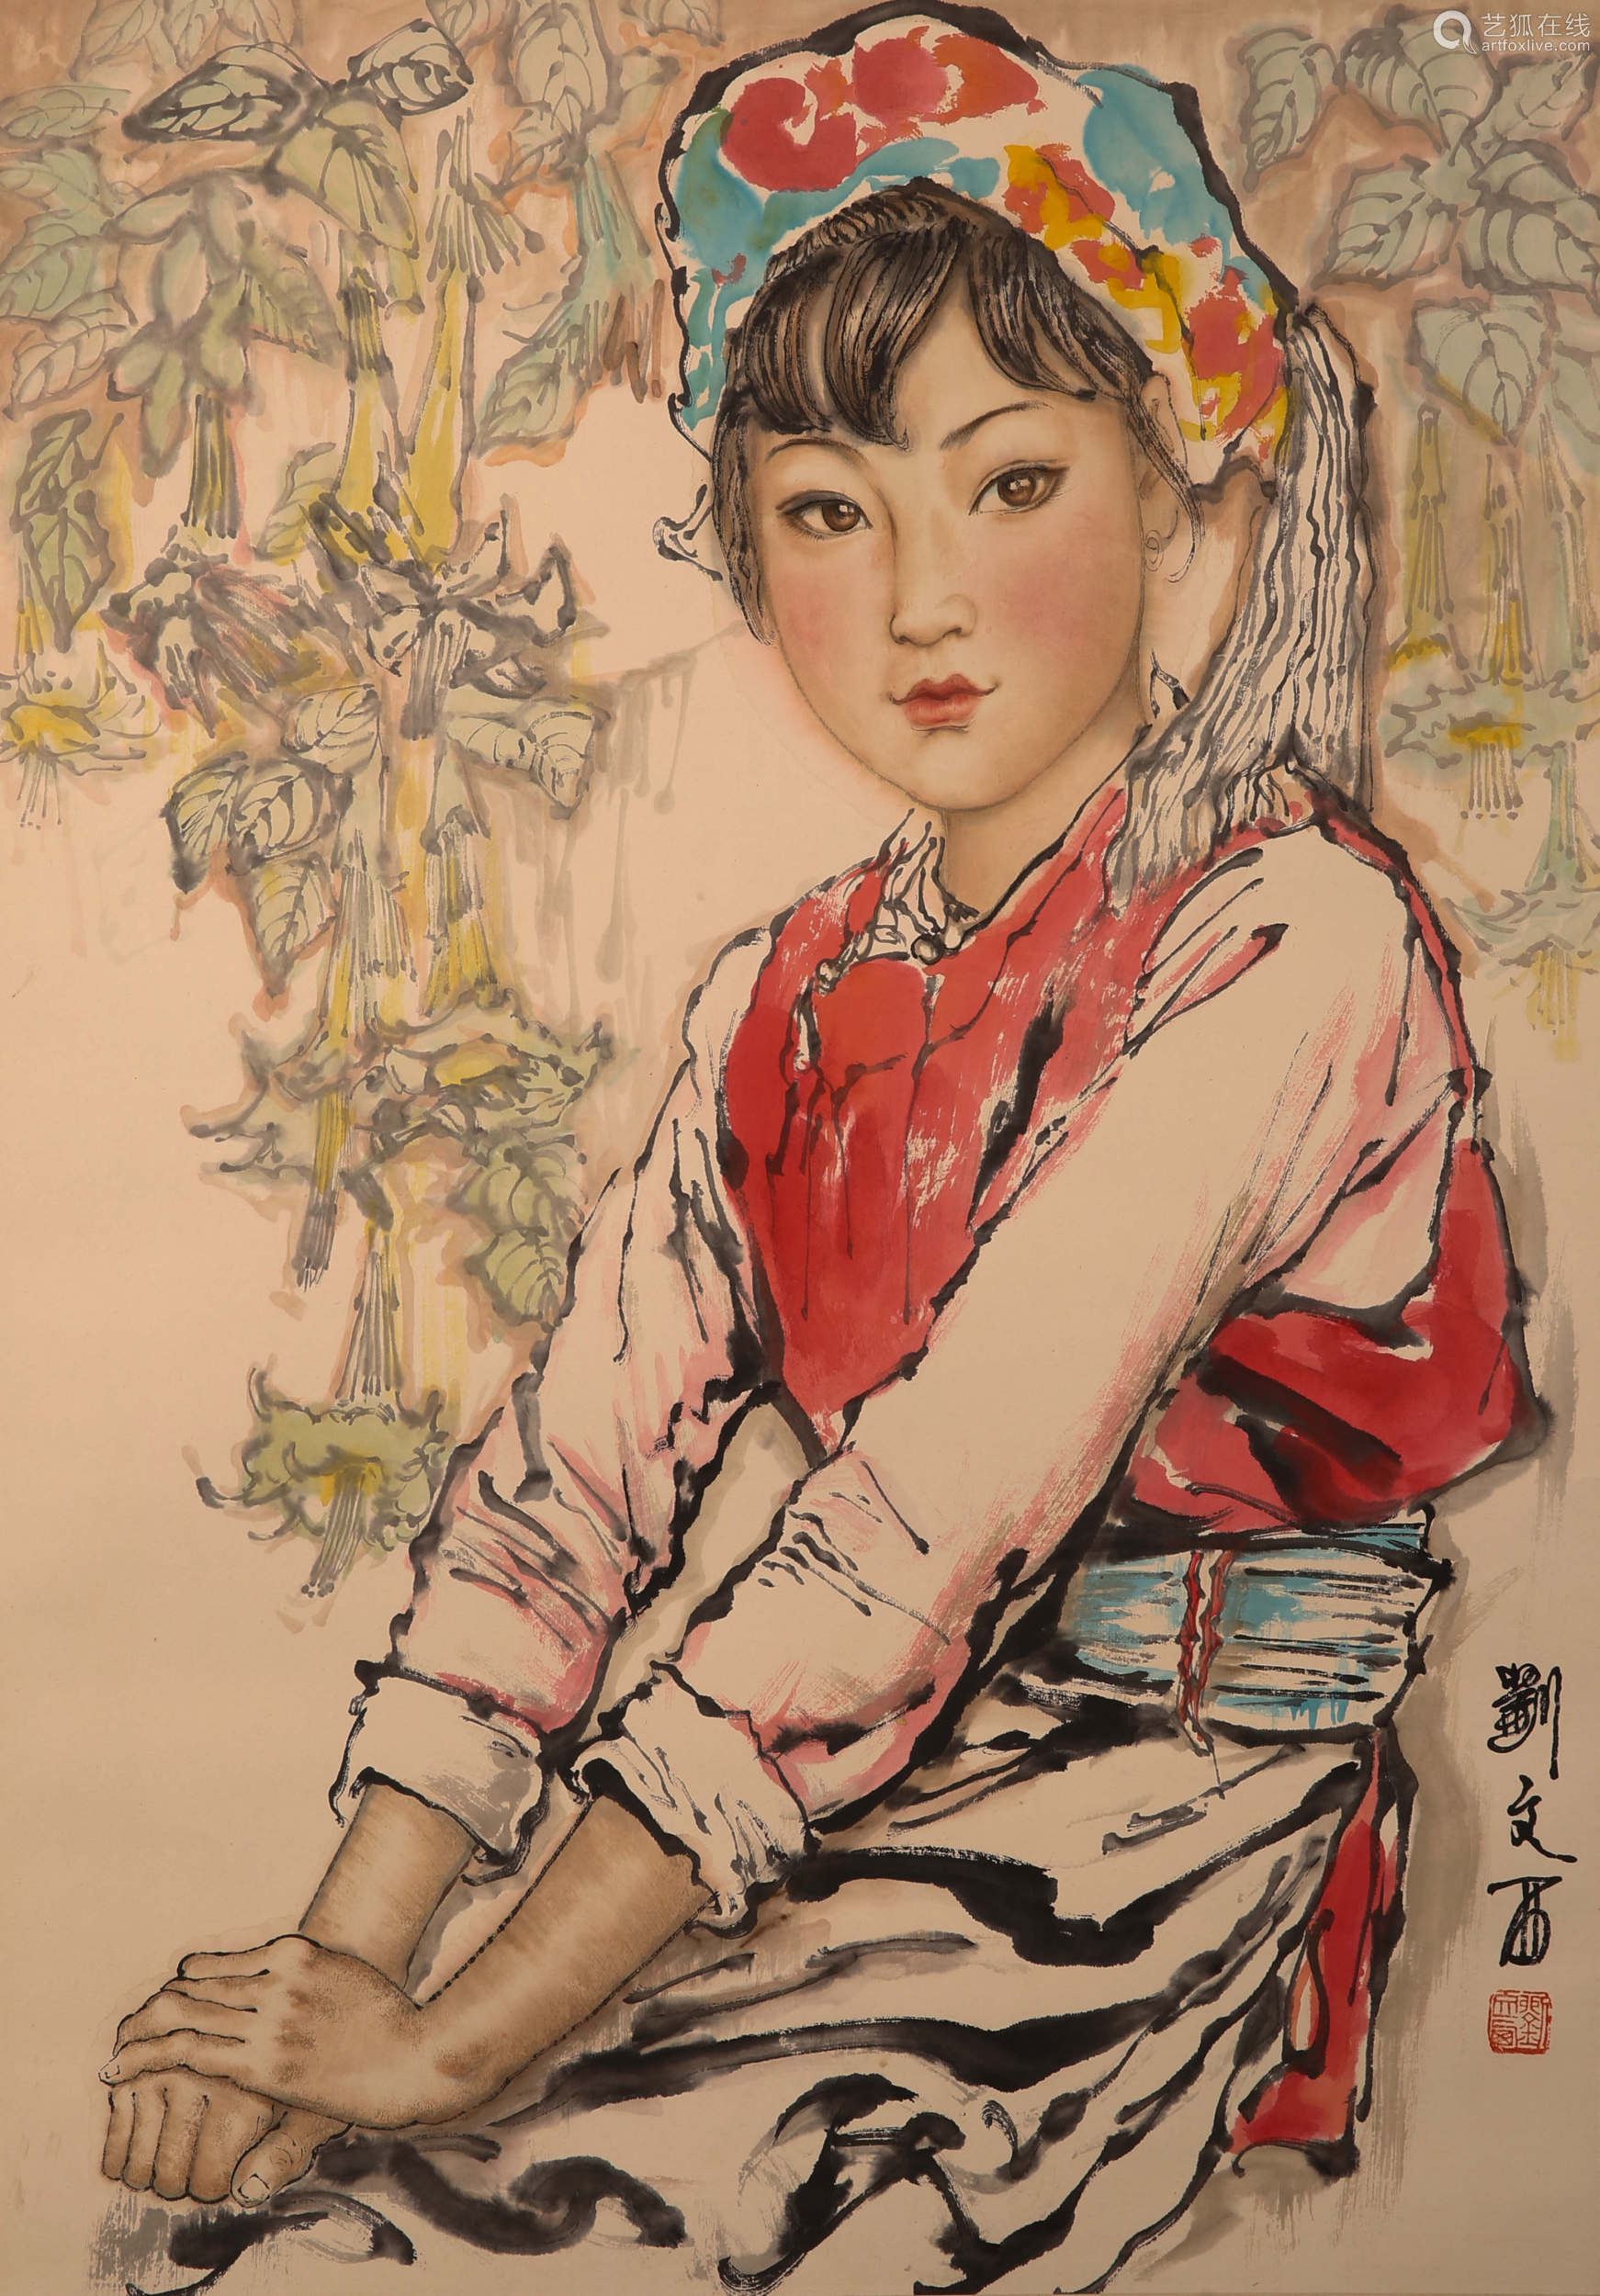 已装裱拍品描述刘文西,1933年生于浙江省嵊州市长乐镇水竹村,当代画家